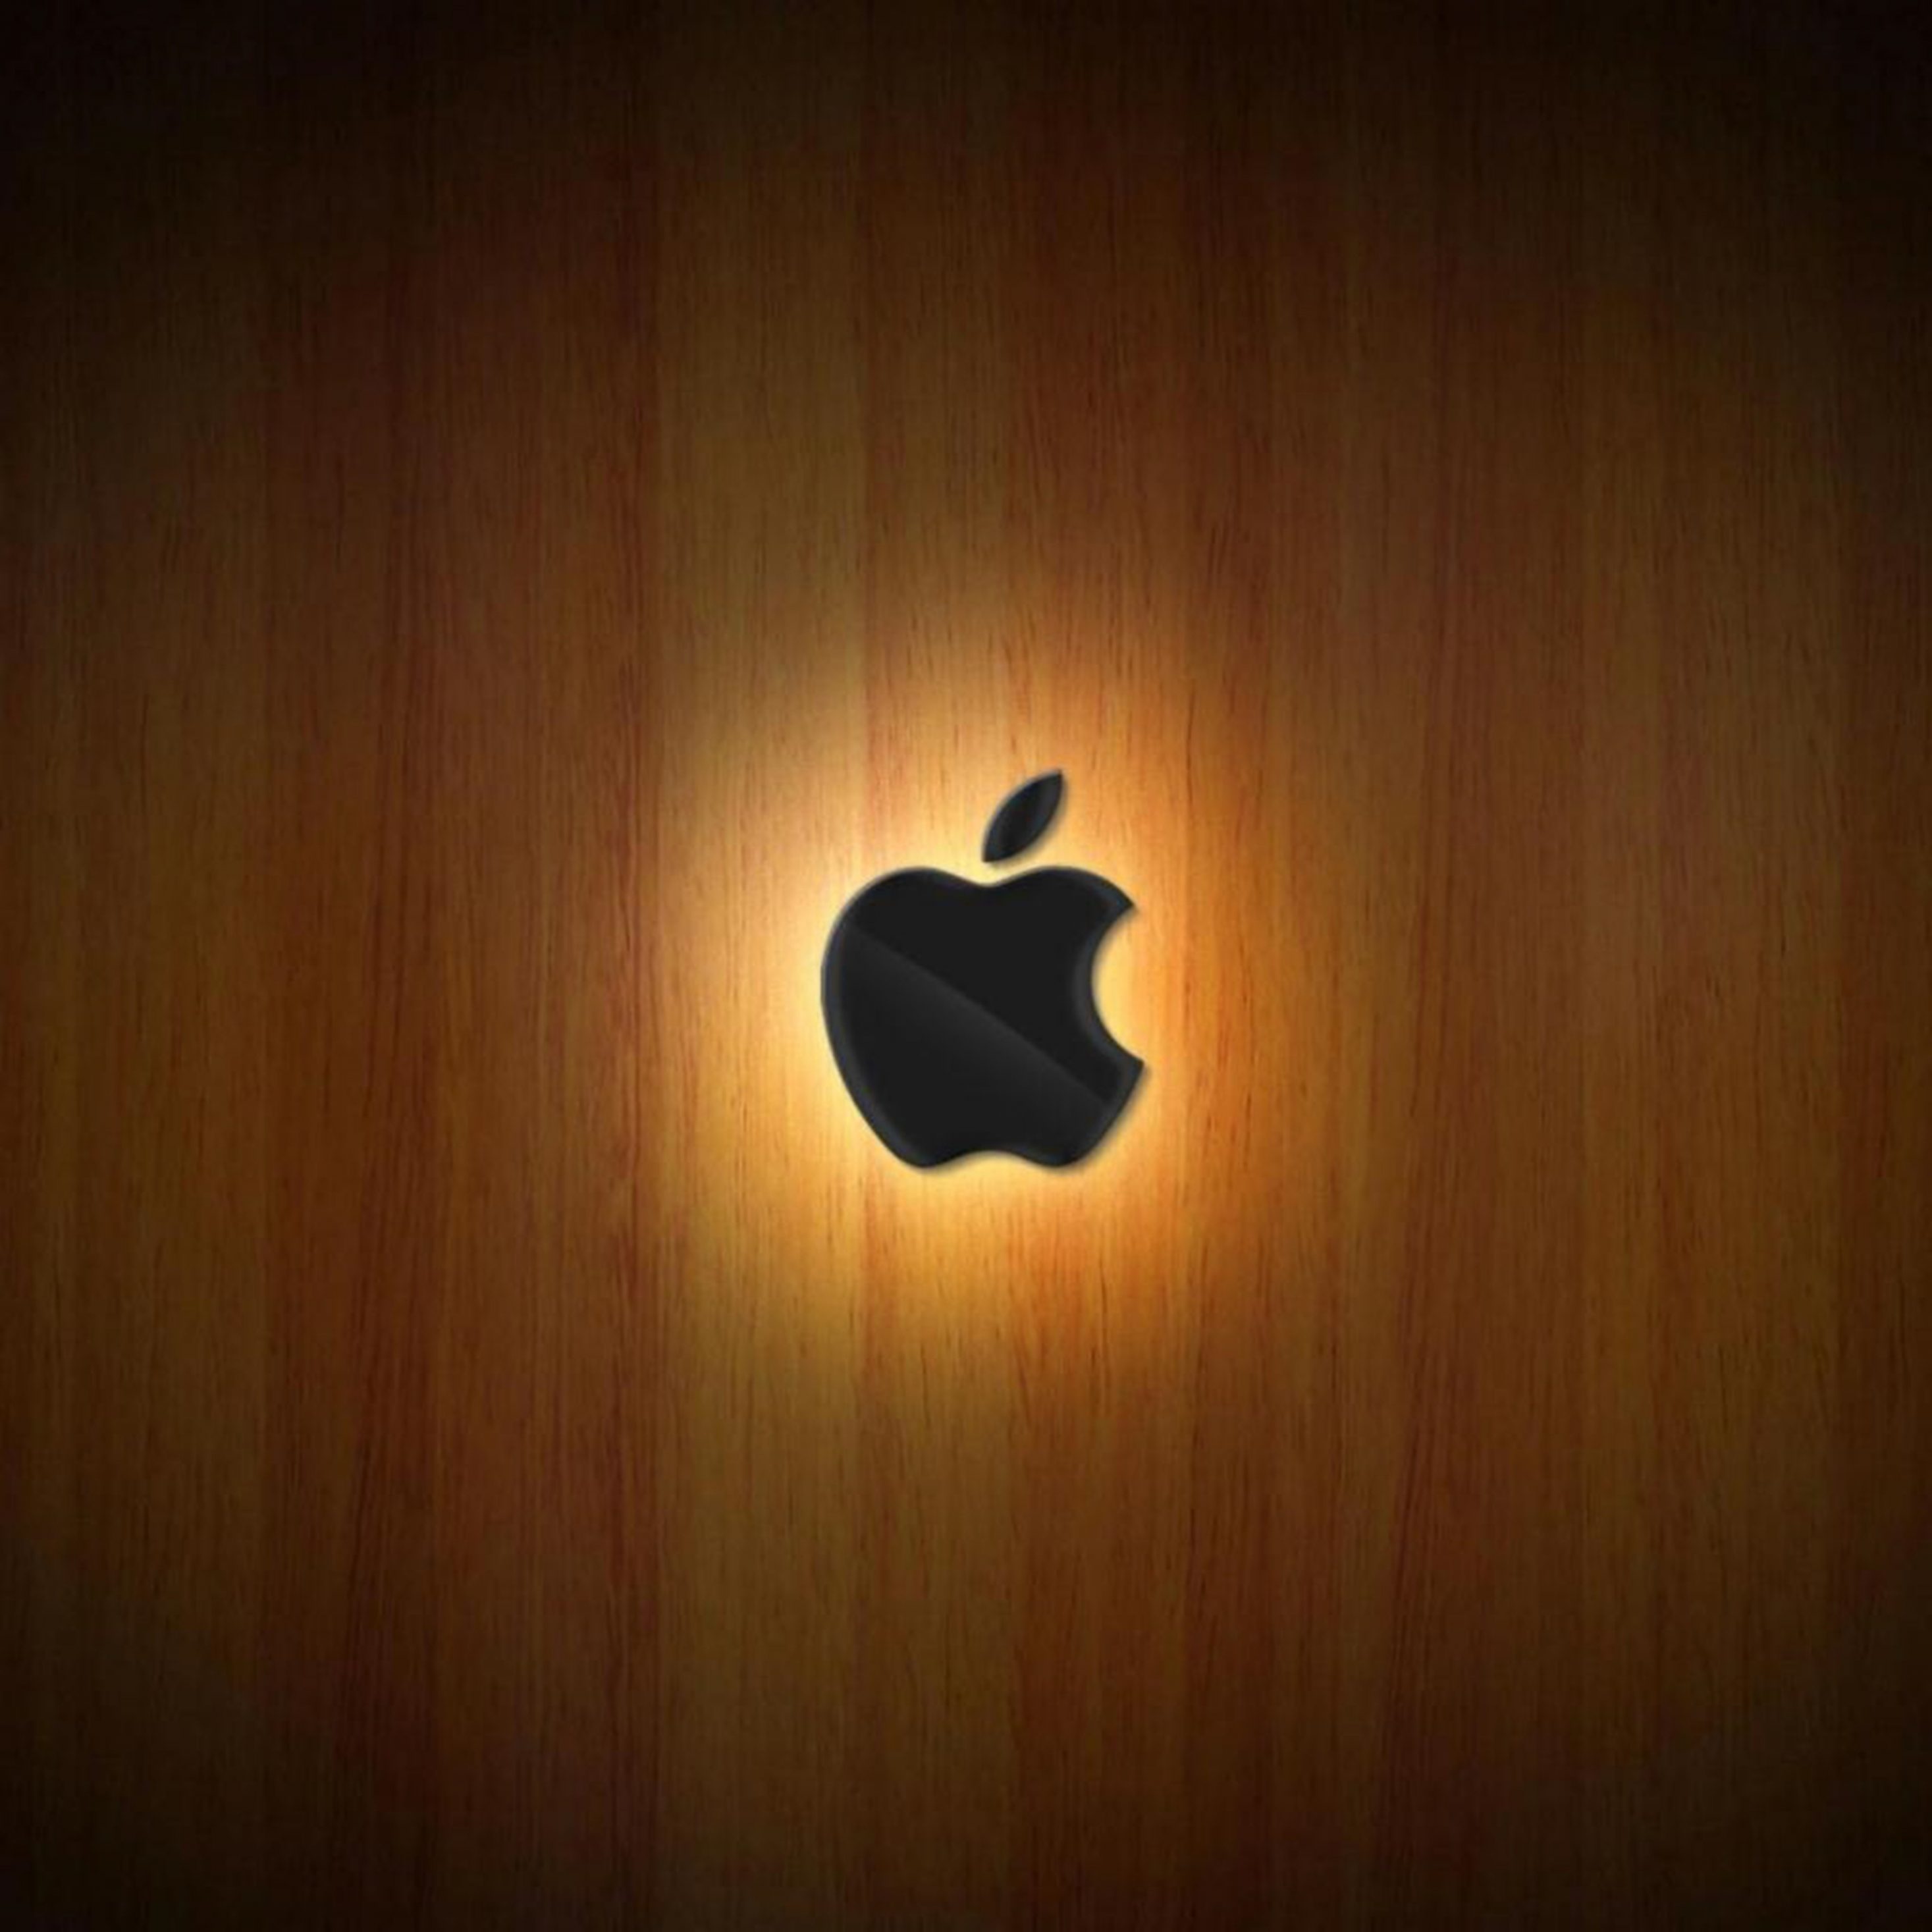 2934x2934 iOS iPad wallpaper 4k Apple Logo Wood Ipad Wallpaper 2934x2934 pixels resolution